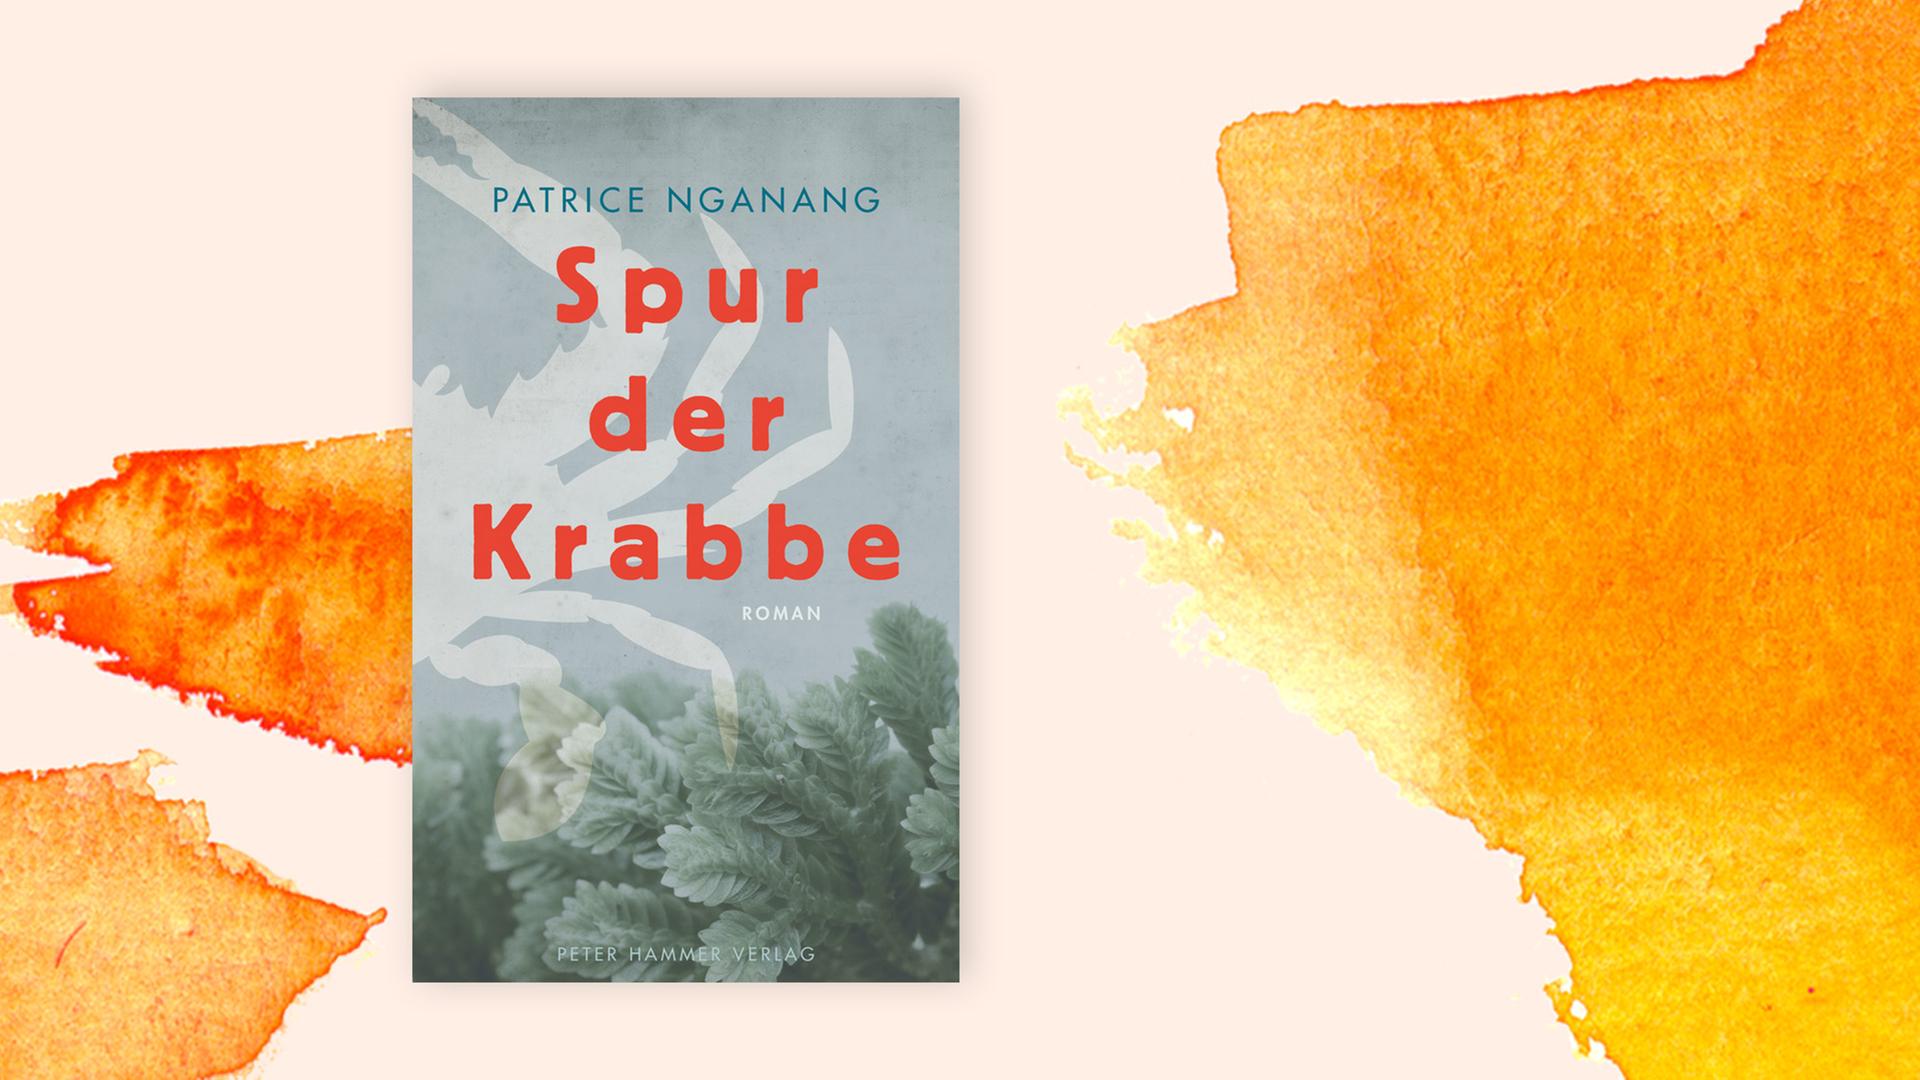 Auf orangefarbenem Pastelluntergrund ist das Cover des Buches "Spur der Krabbe" zu sehen.